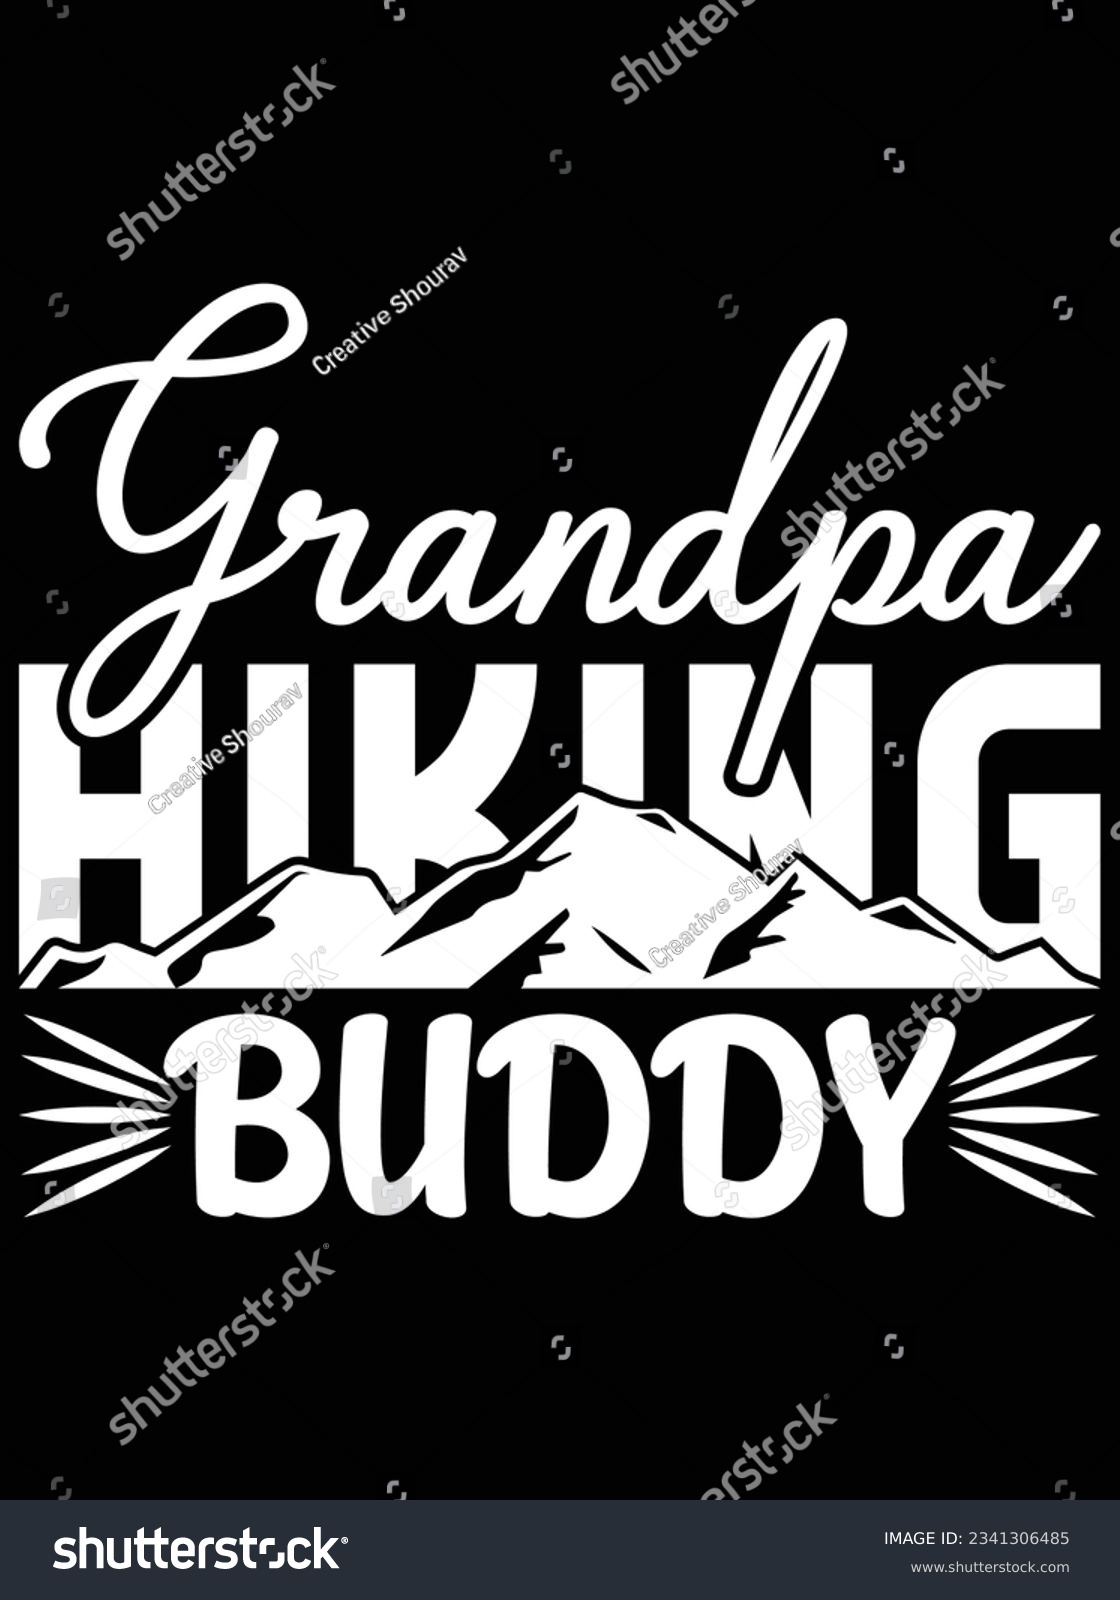 SVG of Grandpa hiking buddy vector art design, eps file. design file for t-shirt. SVG, EPS cuttable design file svg